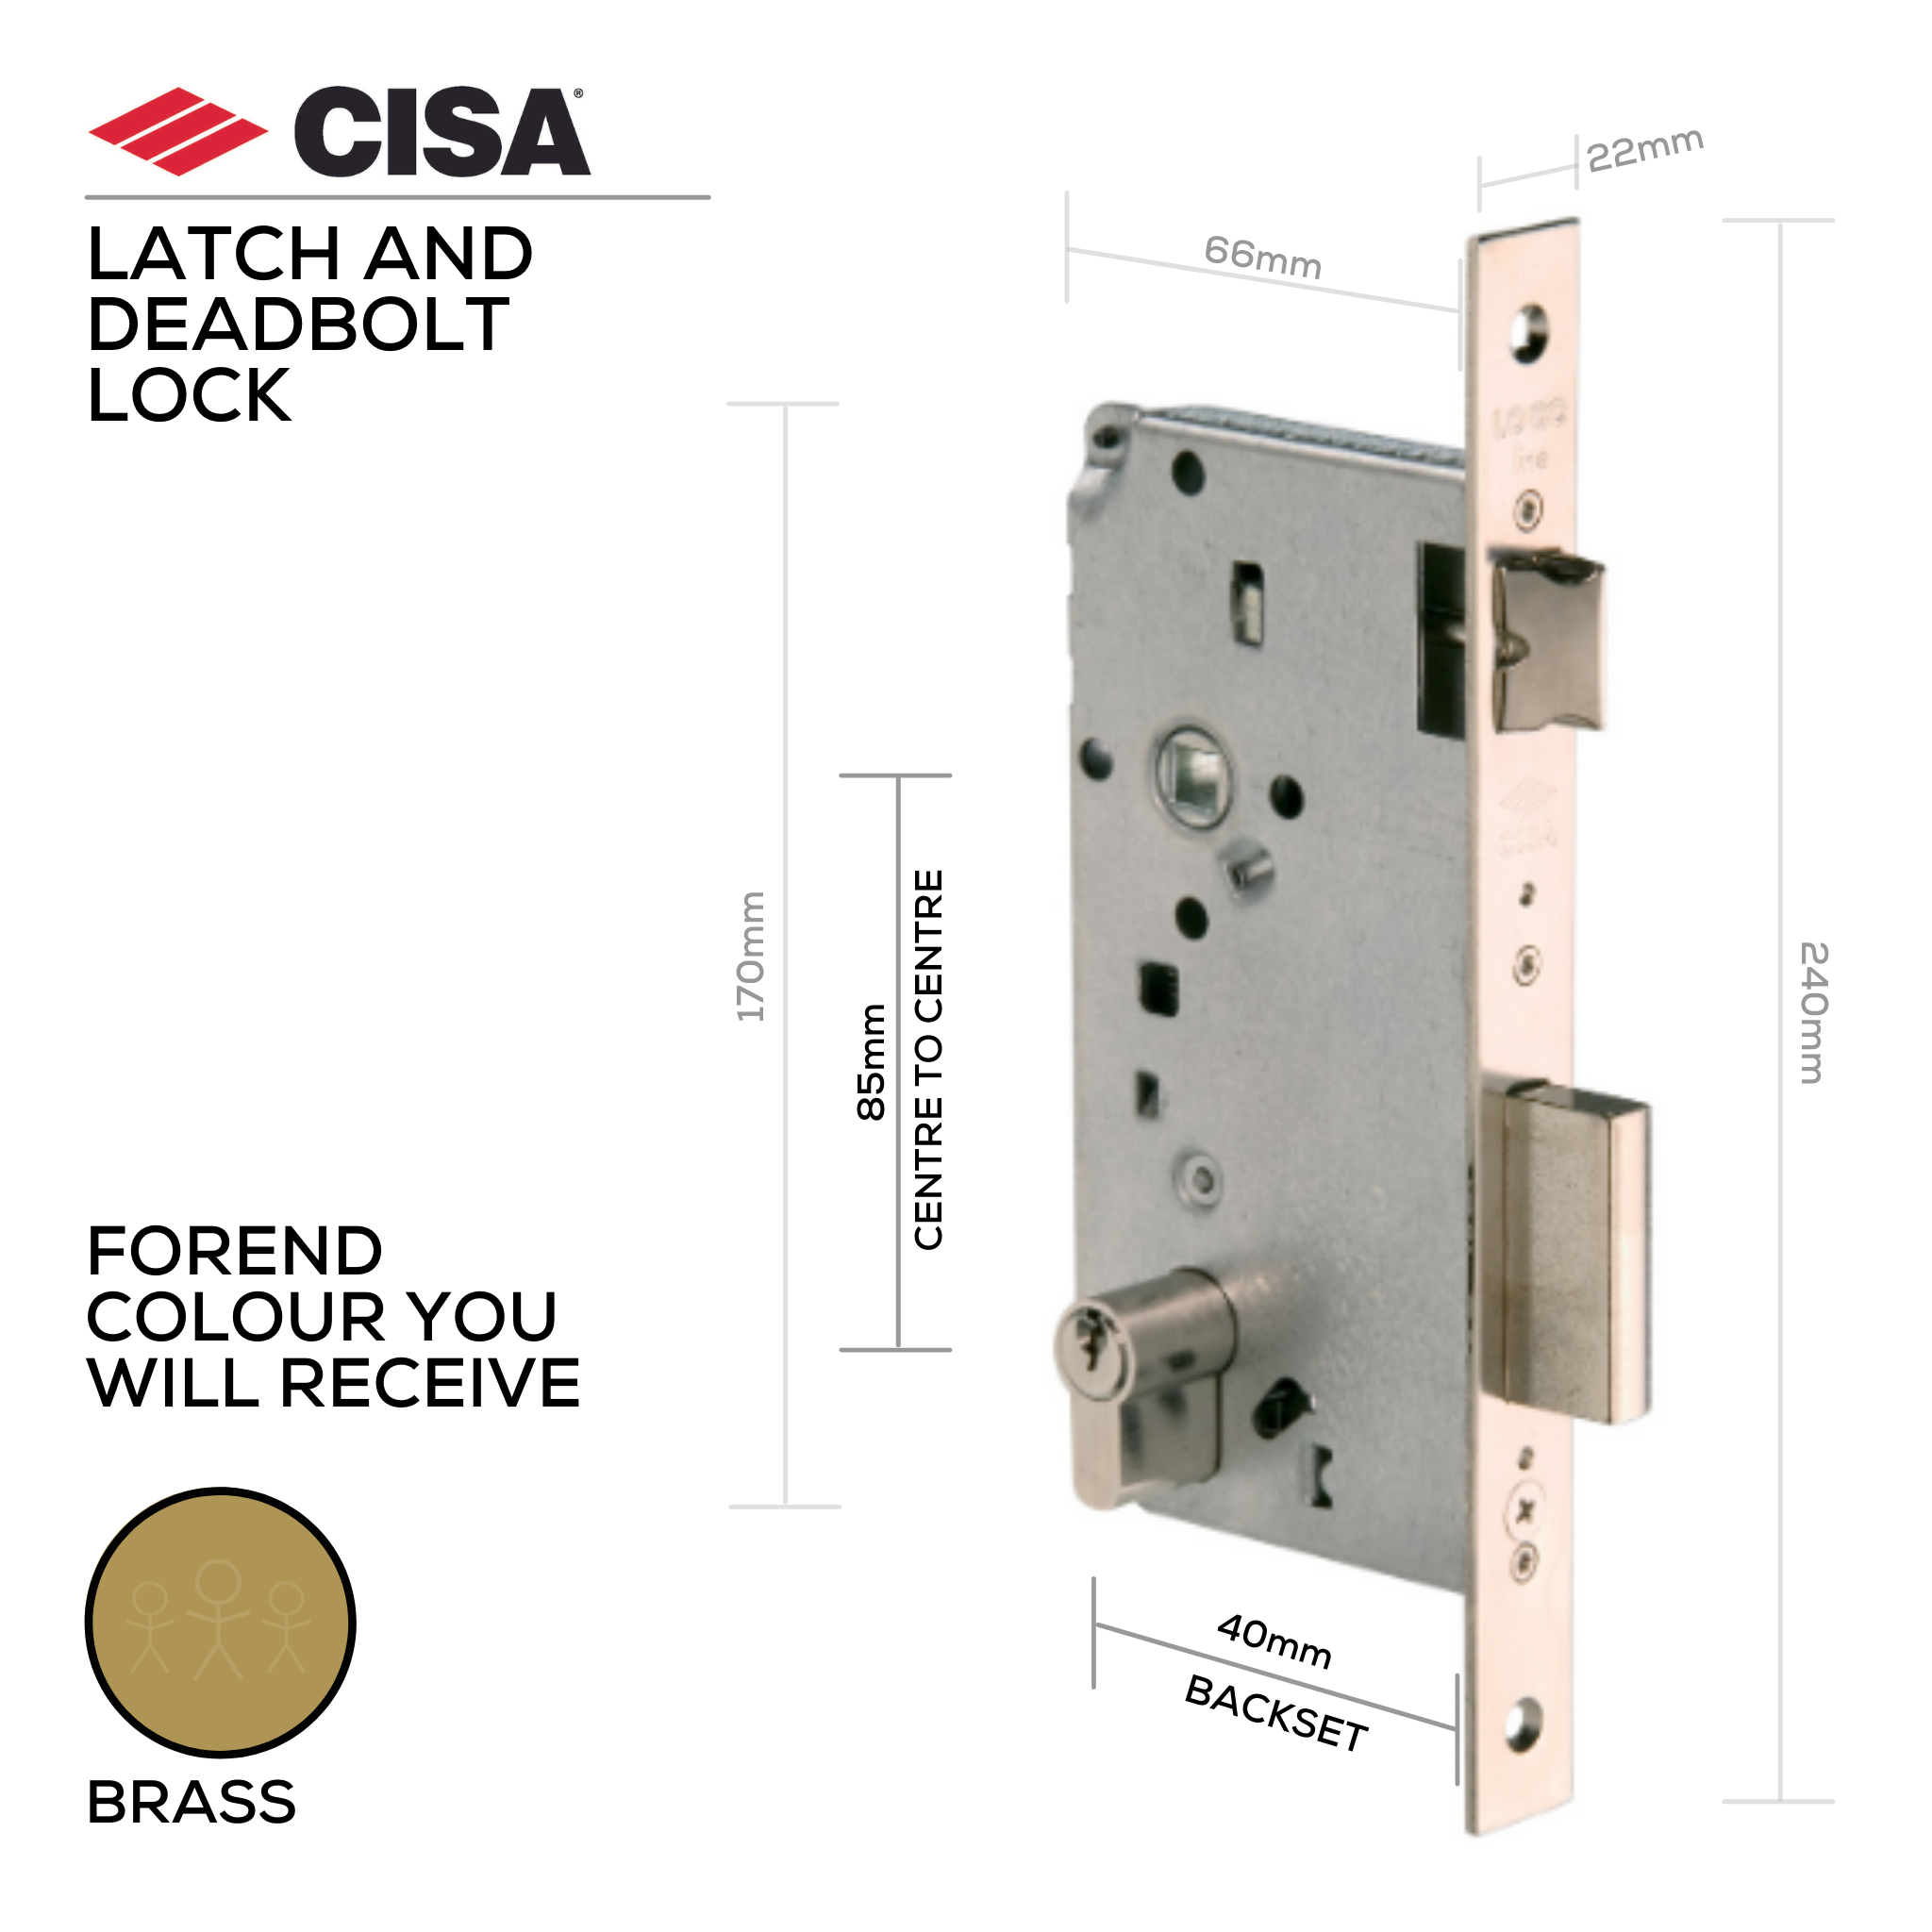 5C611-40-00, Latch & Deadbolt Lock, Euro Cylinder, Excluding Cylinder, 40mm (Backset), 85mm (ctc), Brass, CISA